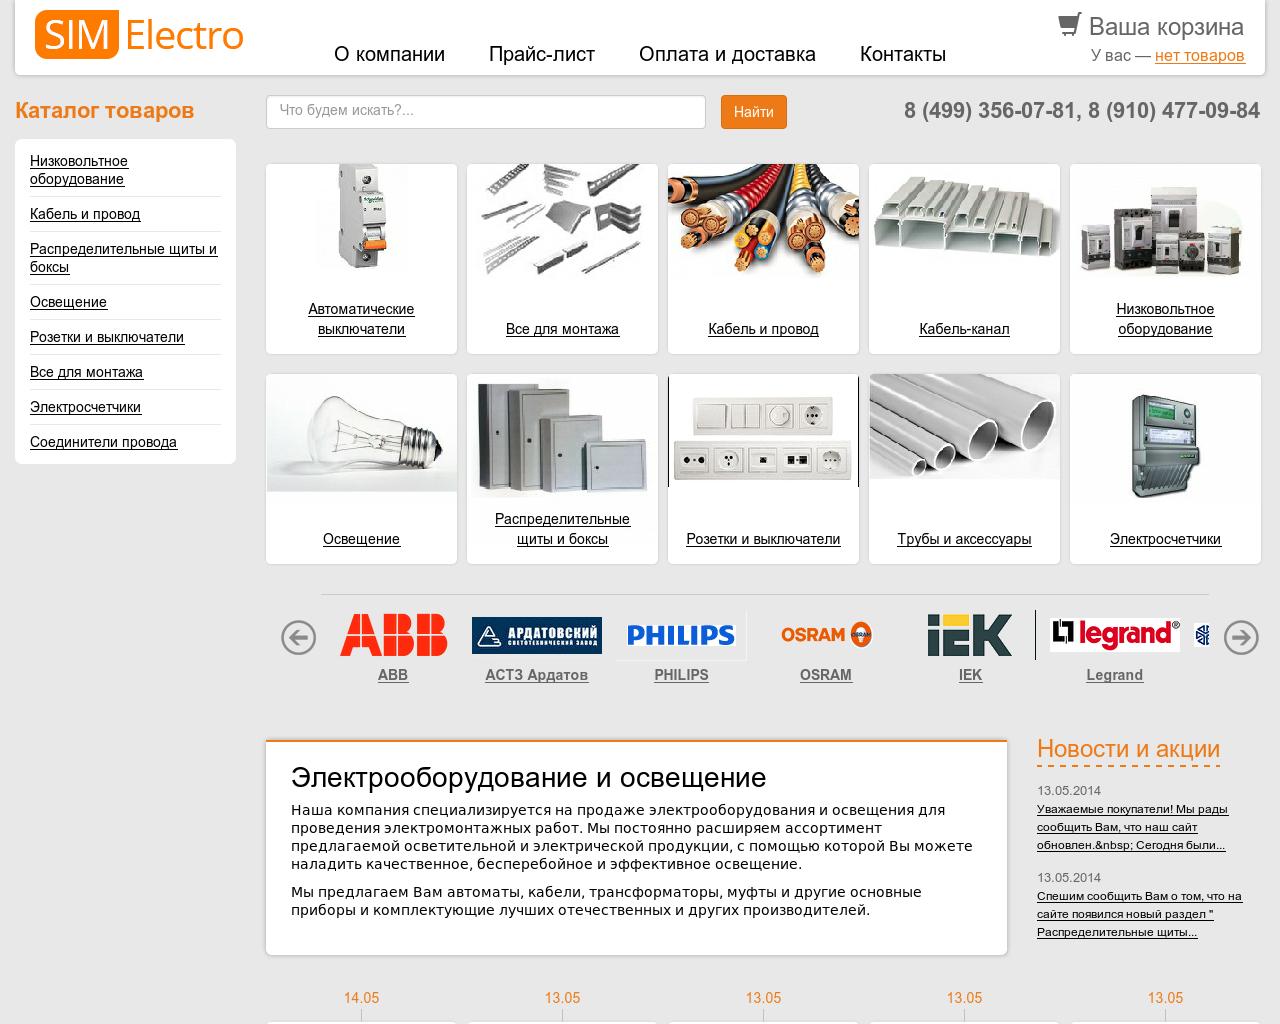 Изображение сайта sim-electro.ru в разрешении 1280x1024